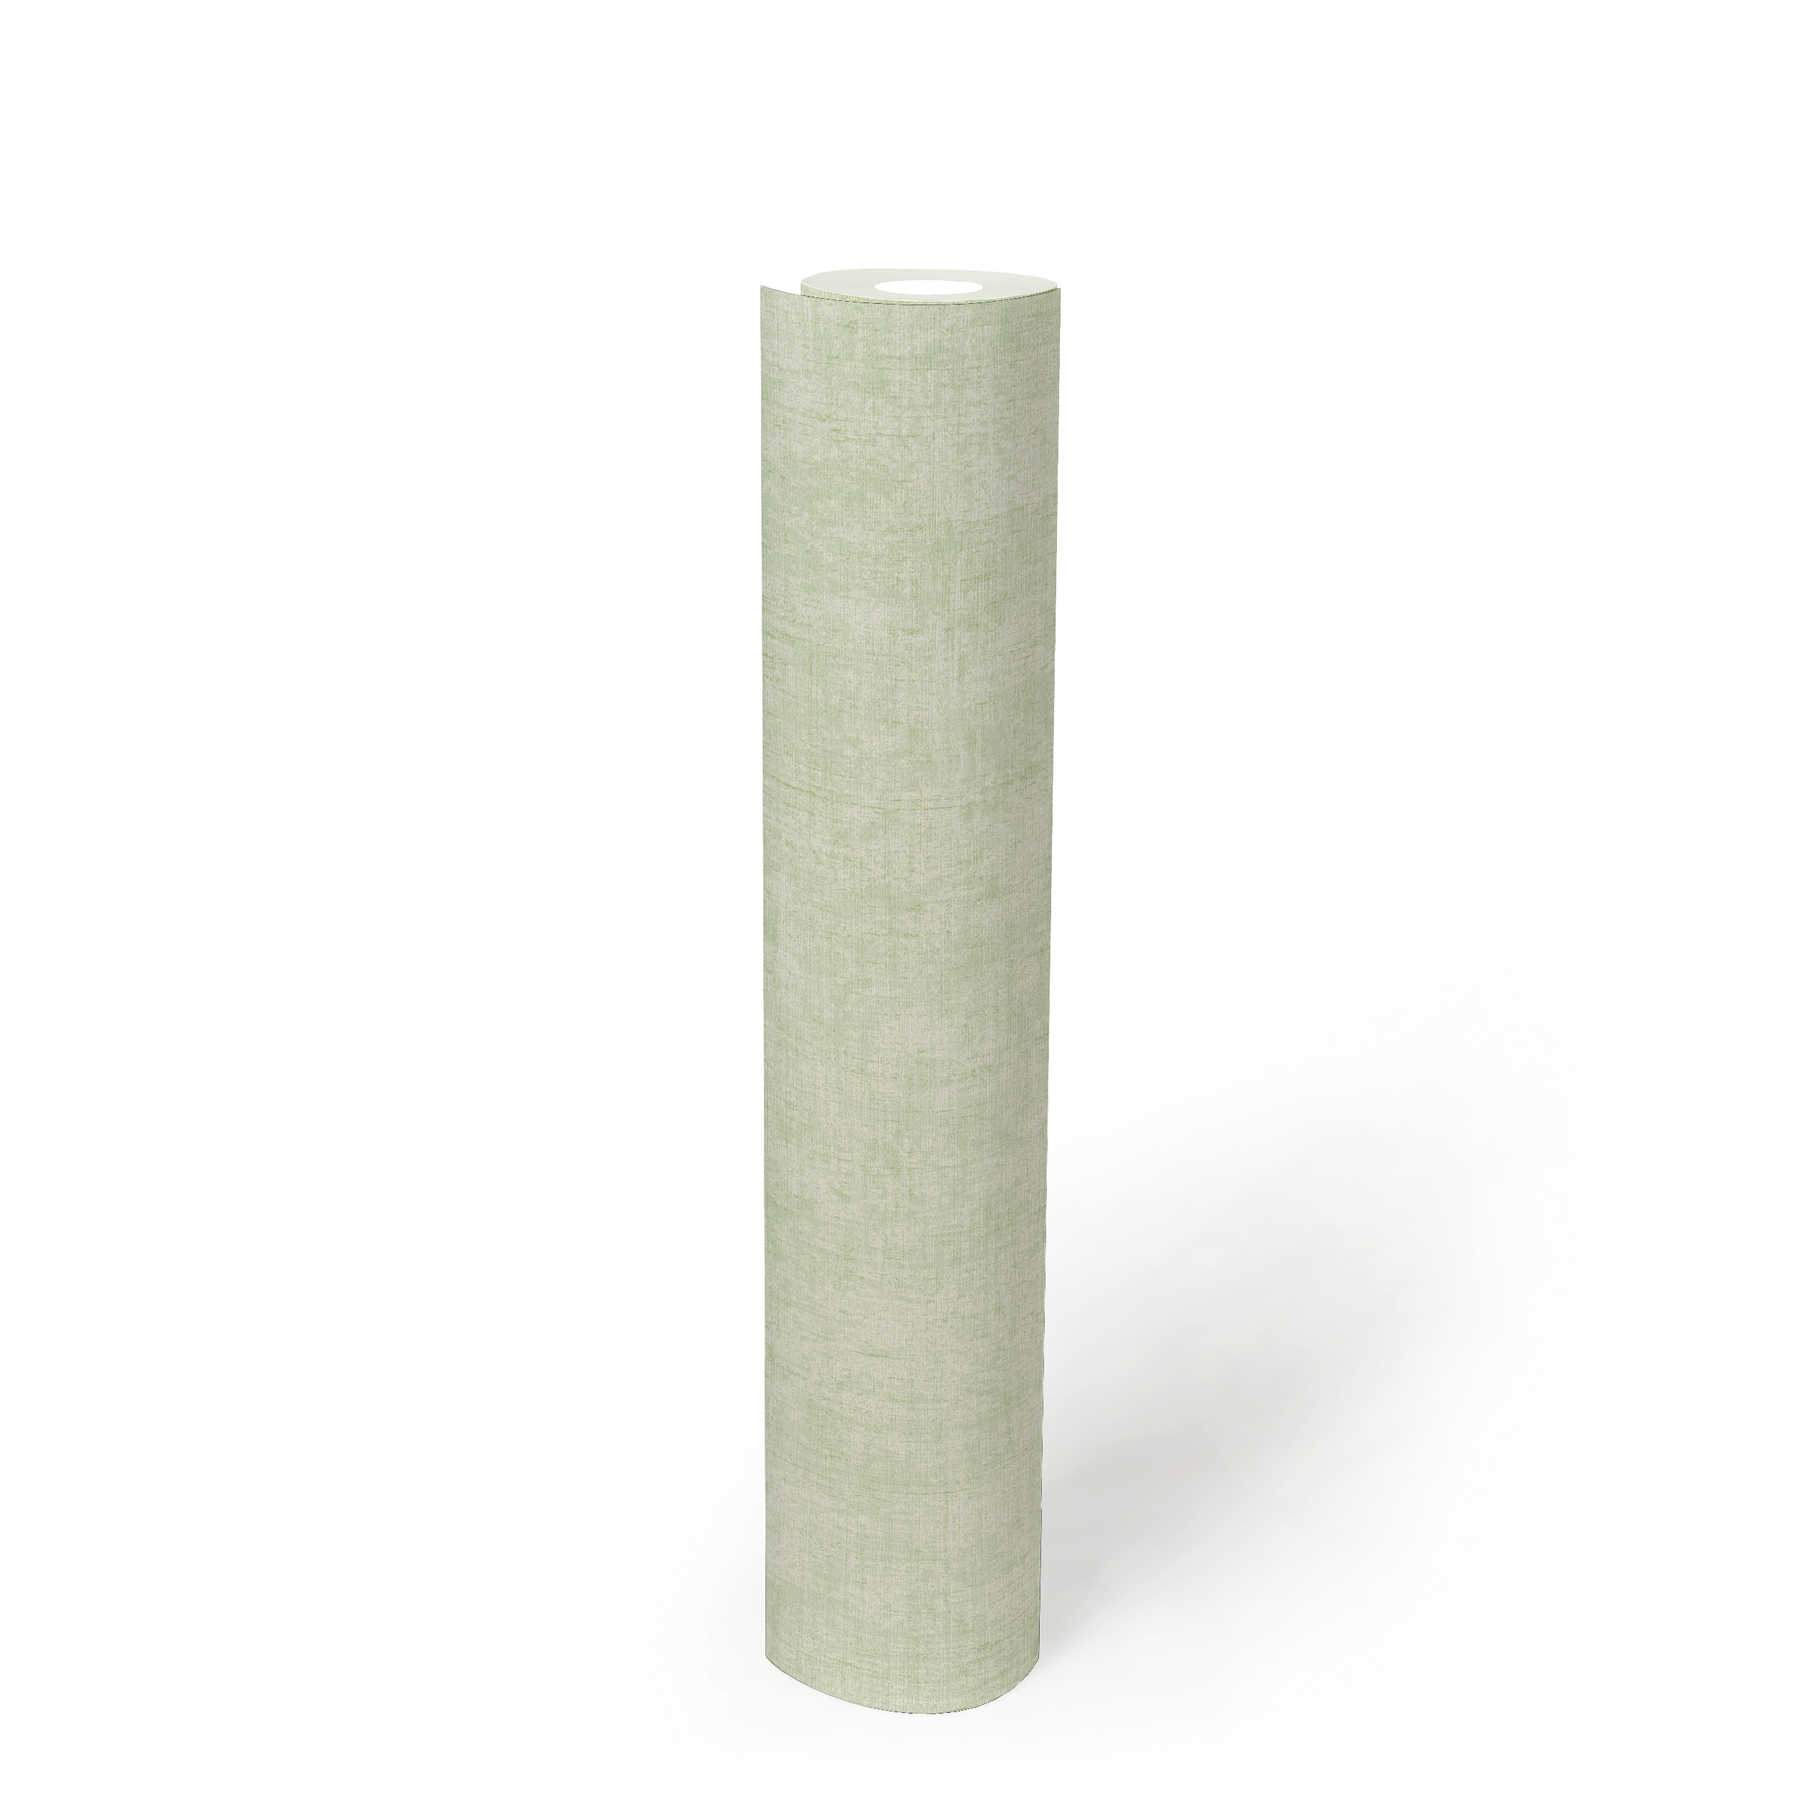             Kalkgroen behang groen grijs gevlekt met natuurlijke structuur
        